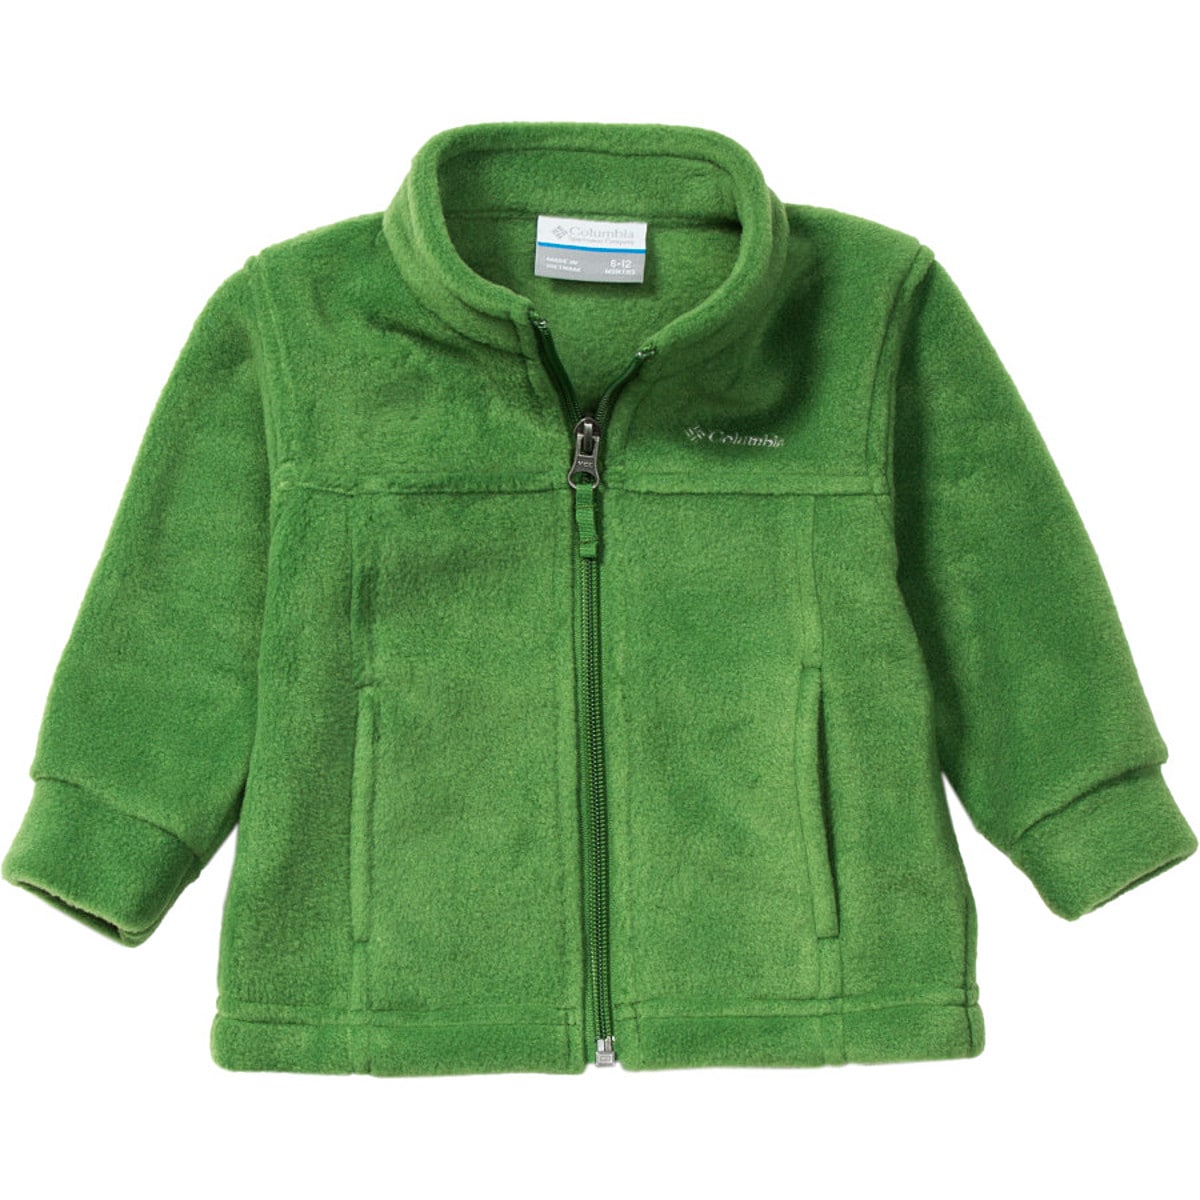 Steens II Mountain Fleece Jacket - Infant Boys